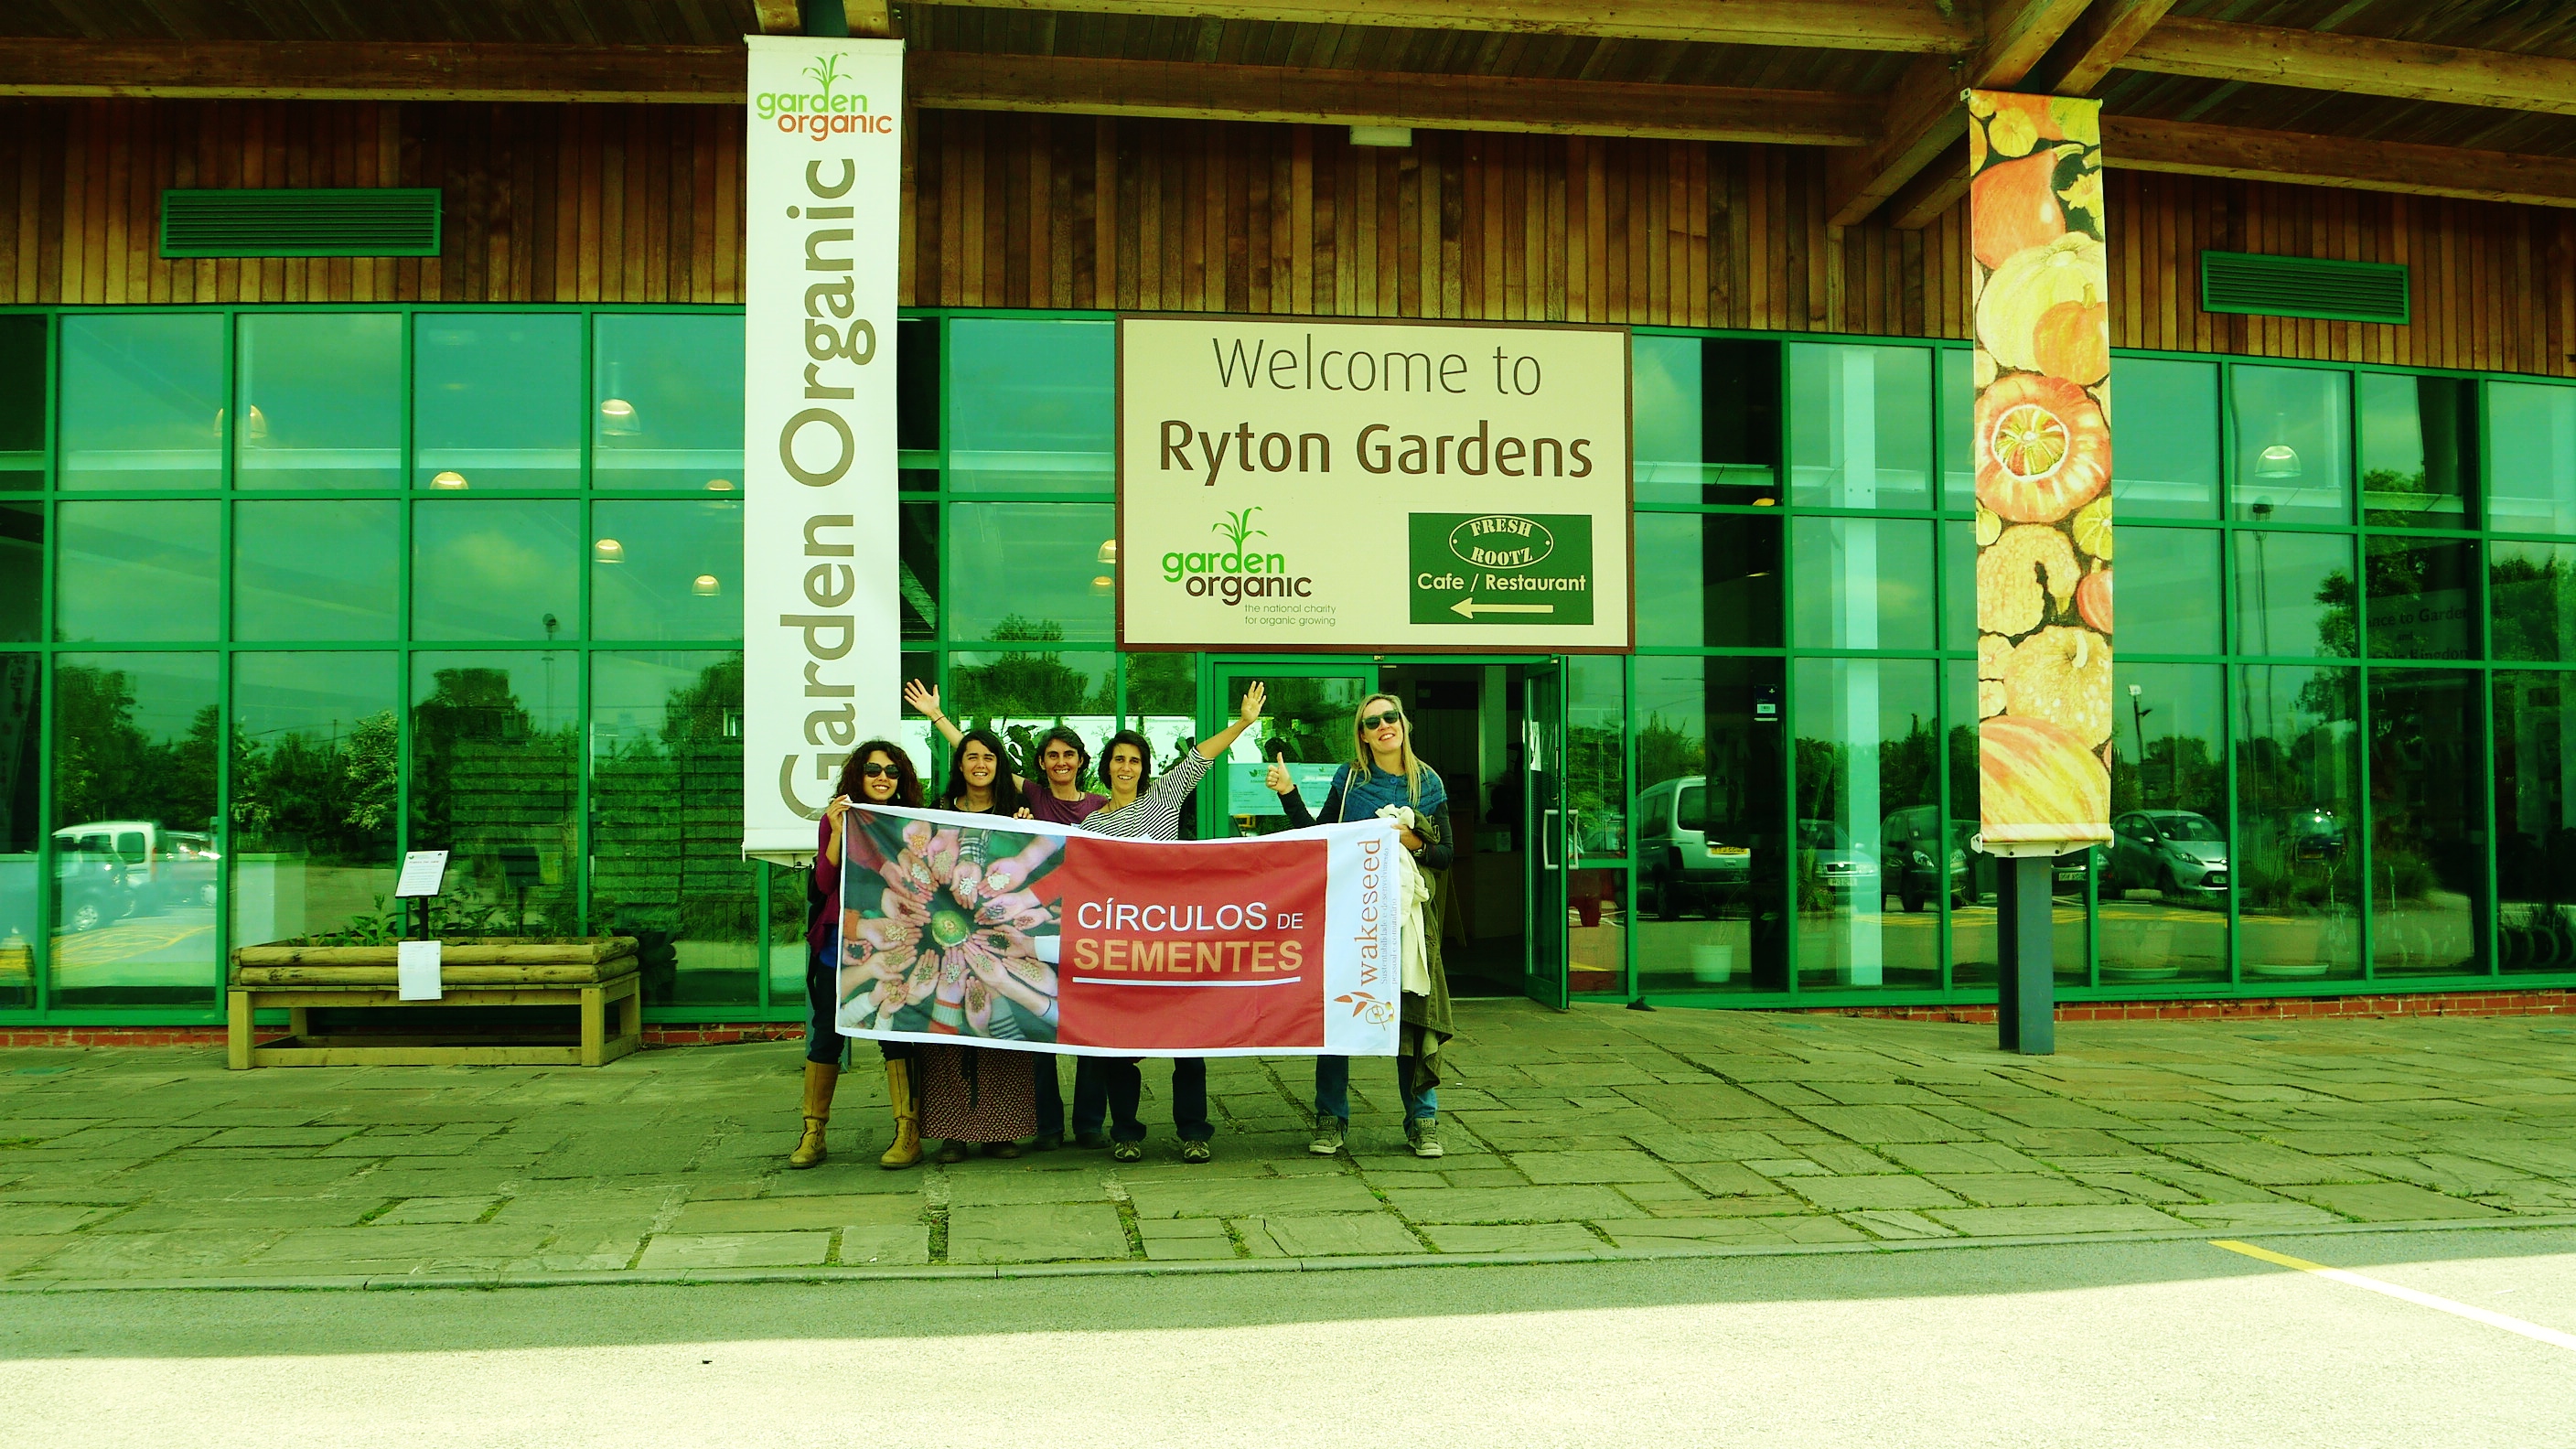 Projecto Círculos de Sementes participou em visita de Intercâmbio em Coventry, Inglaterra